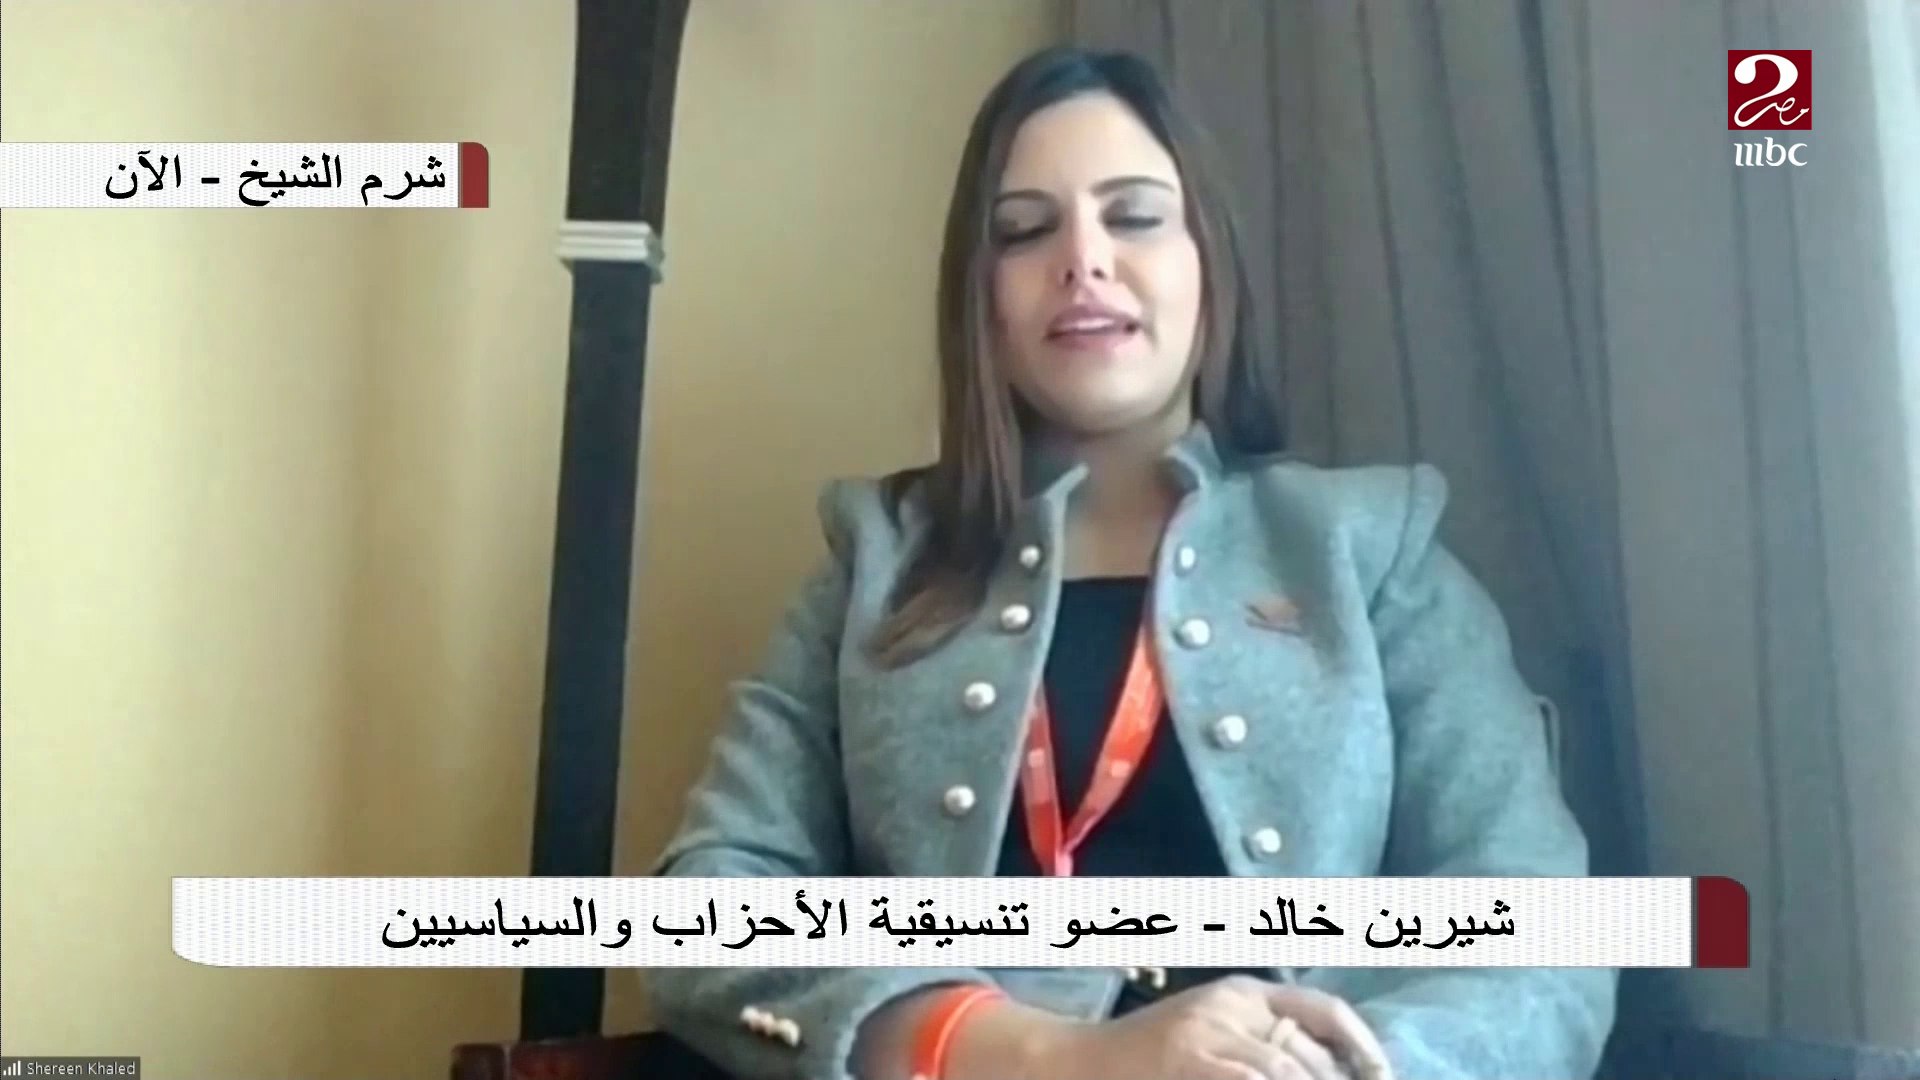 شيرين خالد عضو تنسيقية الأحزاب تتحدث عن مشاركتها في النسخة الرابعة من منتدي  شباب العالم - video Dailymotion